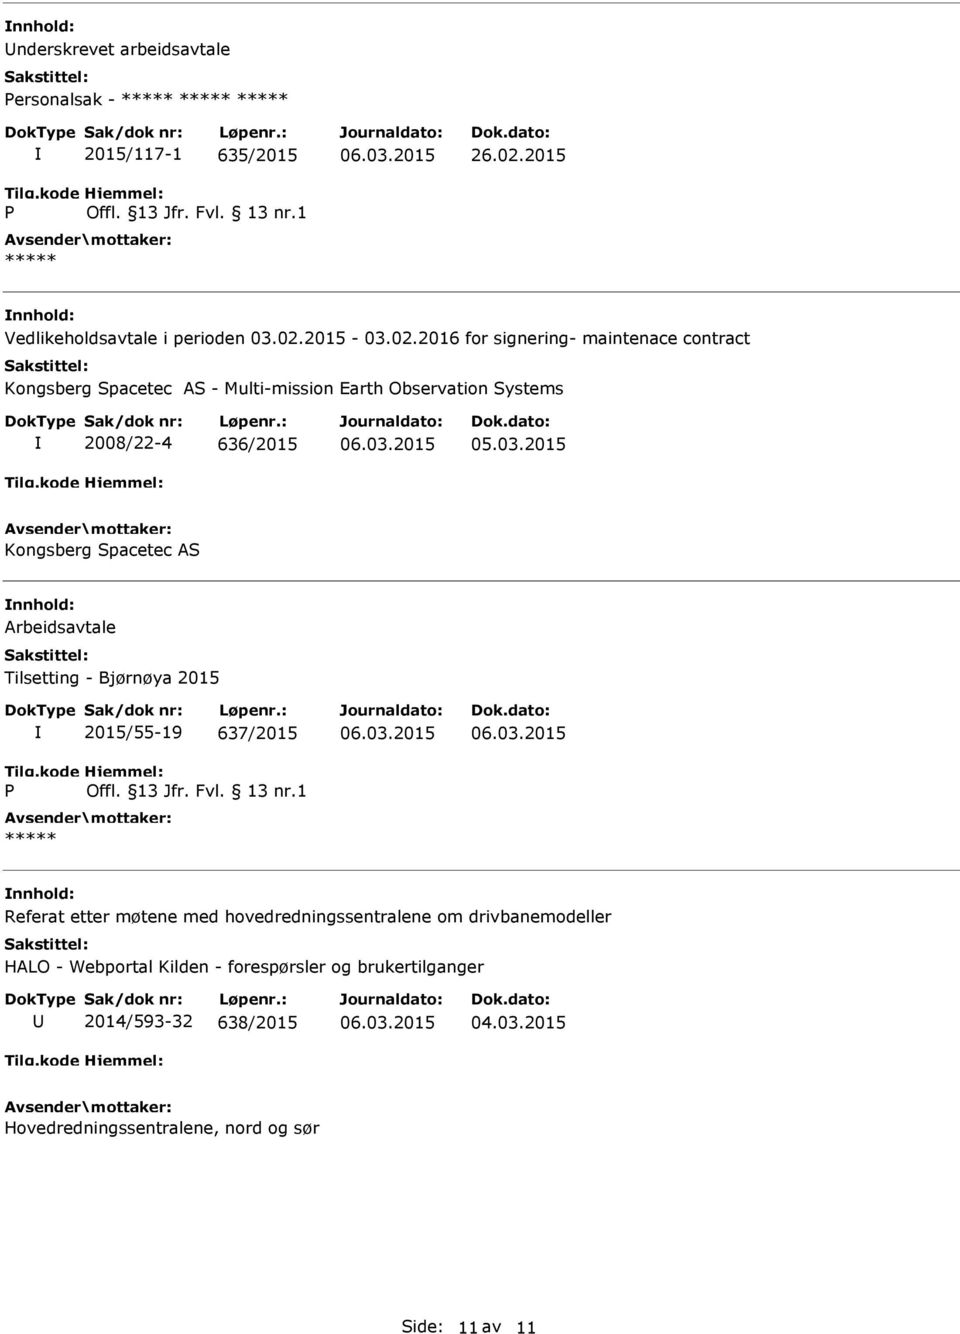 AS Arbeidsavtale Tilsetting - Bjørnøya 2015 P 2015/55-19 637/2015 Offl. 13 Jfr. Fvl. 13 nr.